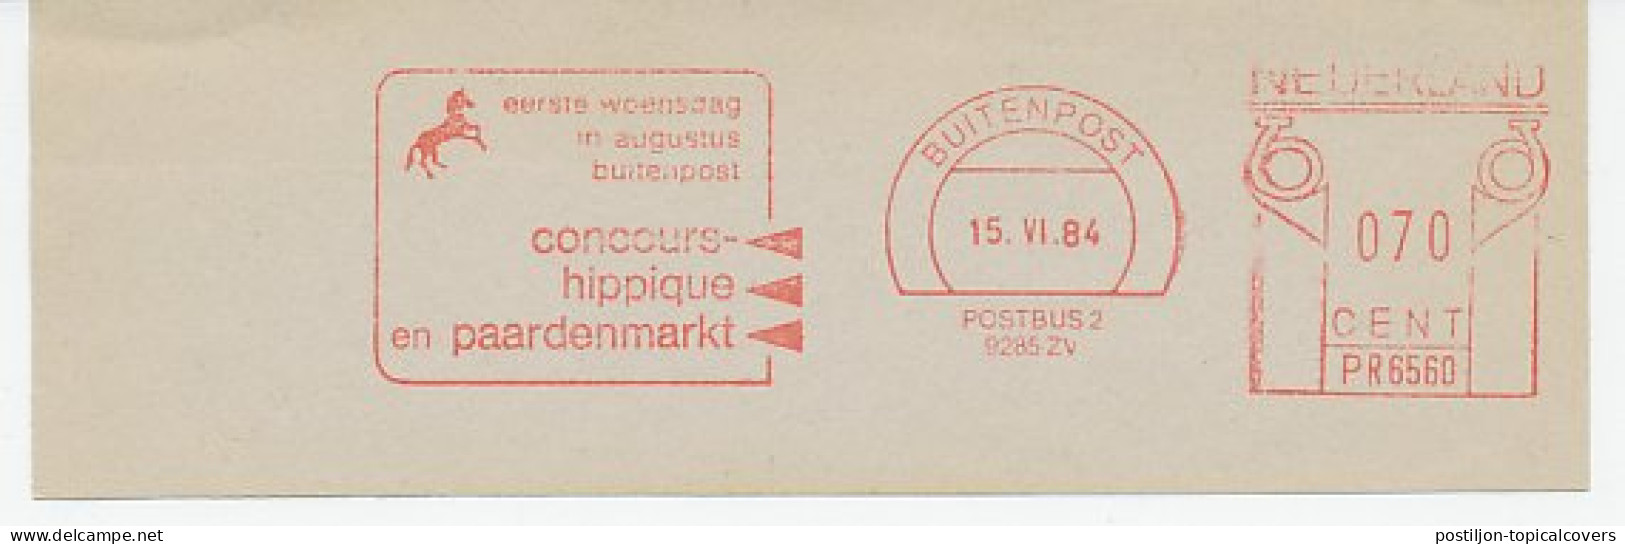 Meter Cut Netherlands 1984 Horse Contest - Horse Market - Concours Hippique - Hípica